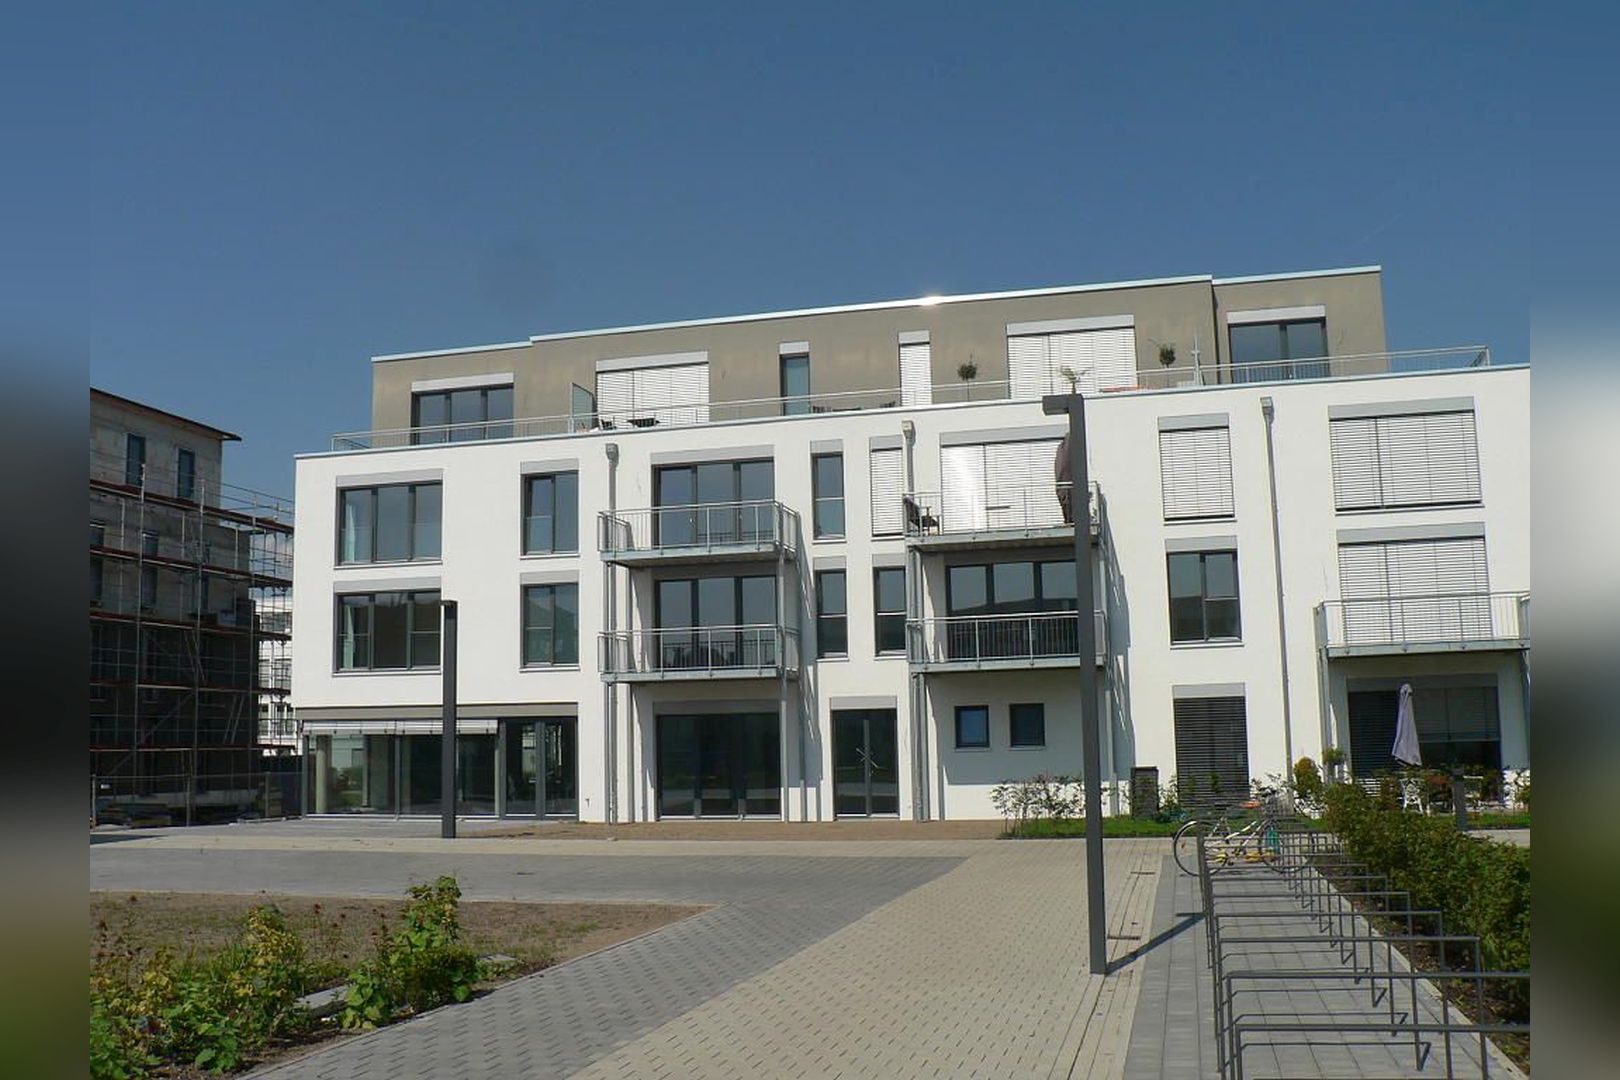 Immobilie Nr.Köln 003.5 - 5-Raum-Wohnung mit Wintergartenküche, 2 Bädern u. großem Balkon  - Bild 18.jpg